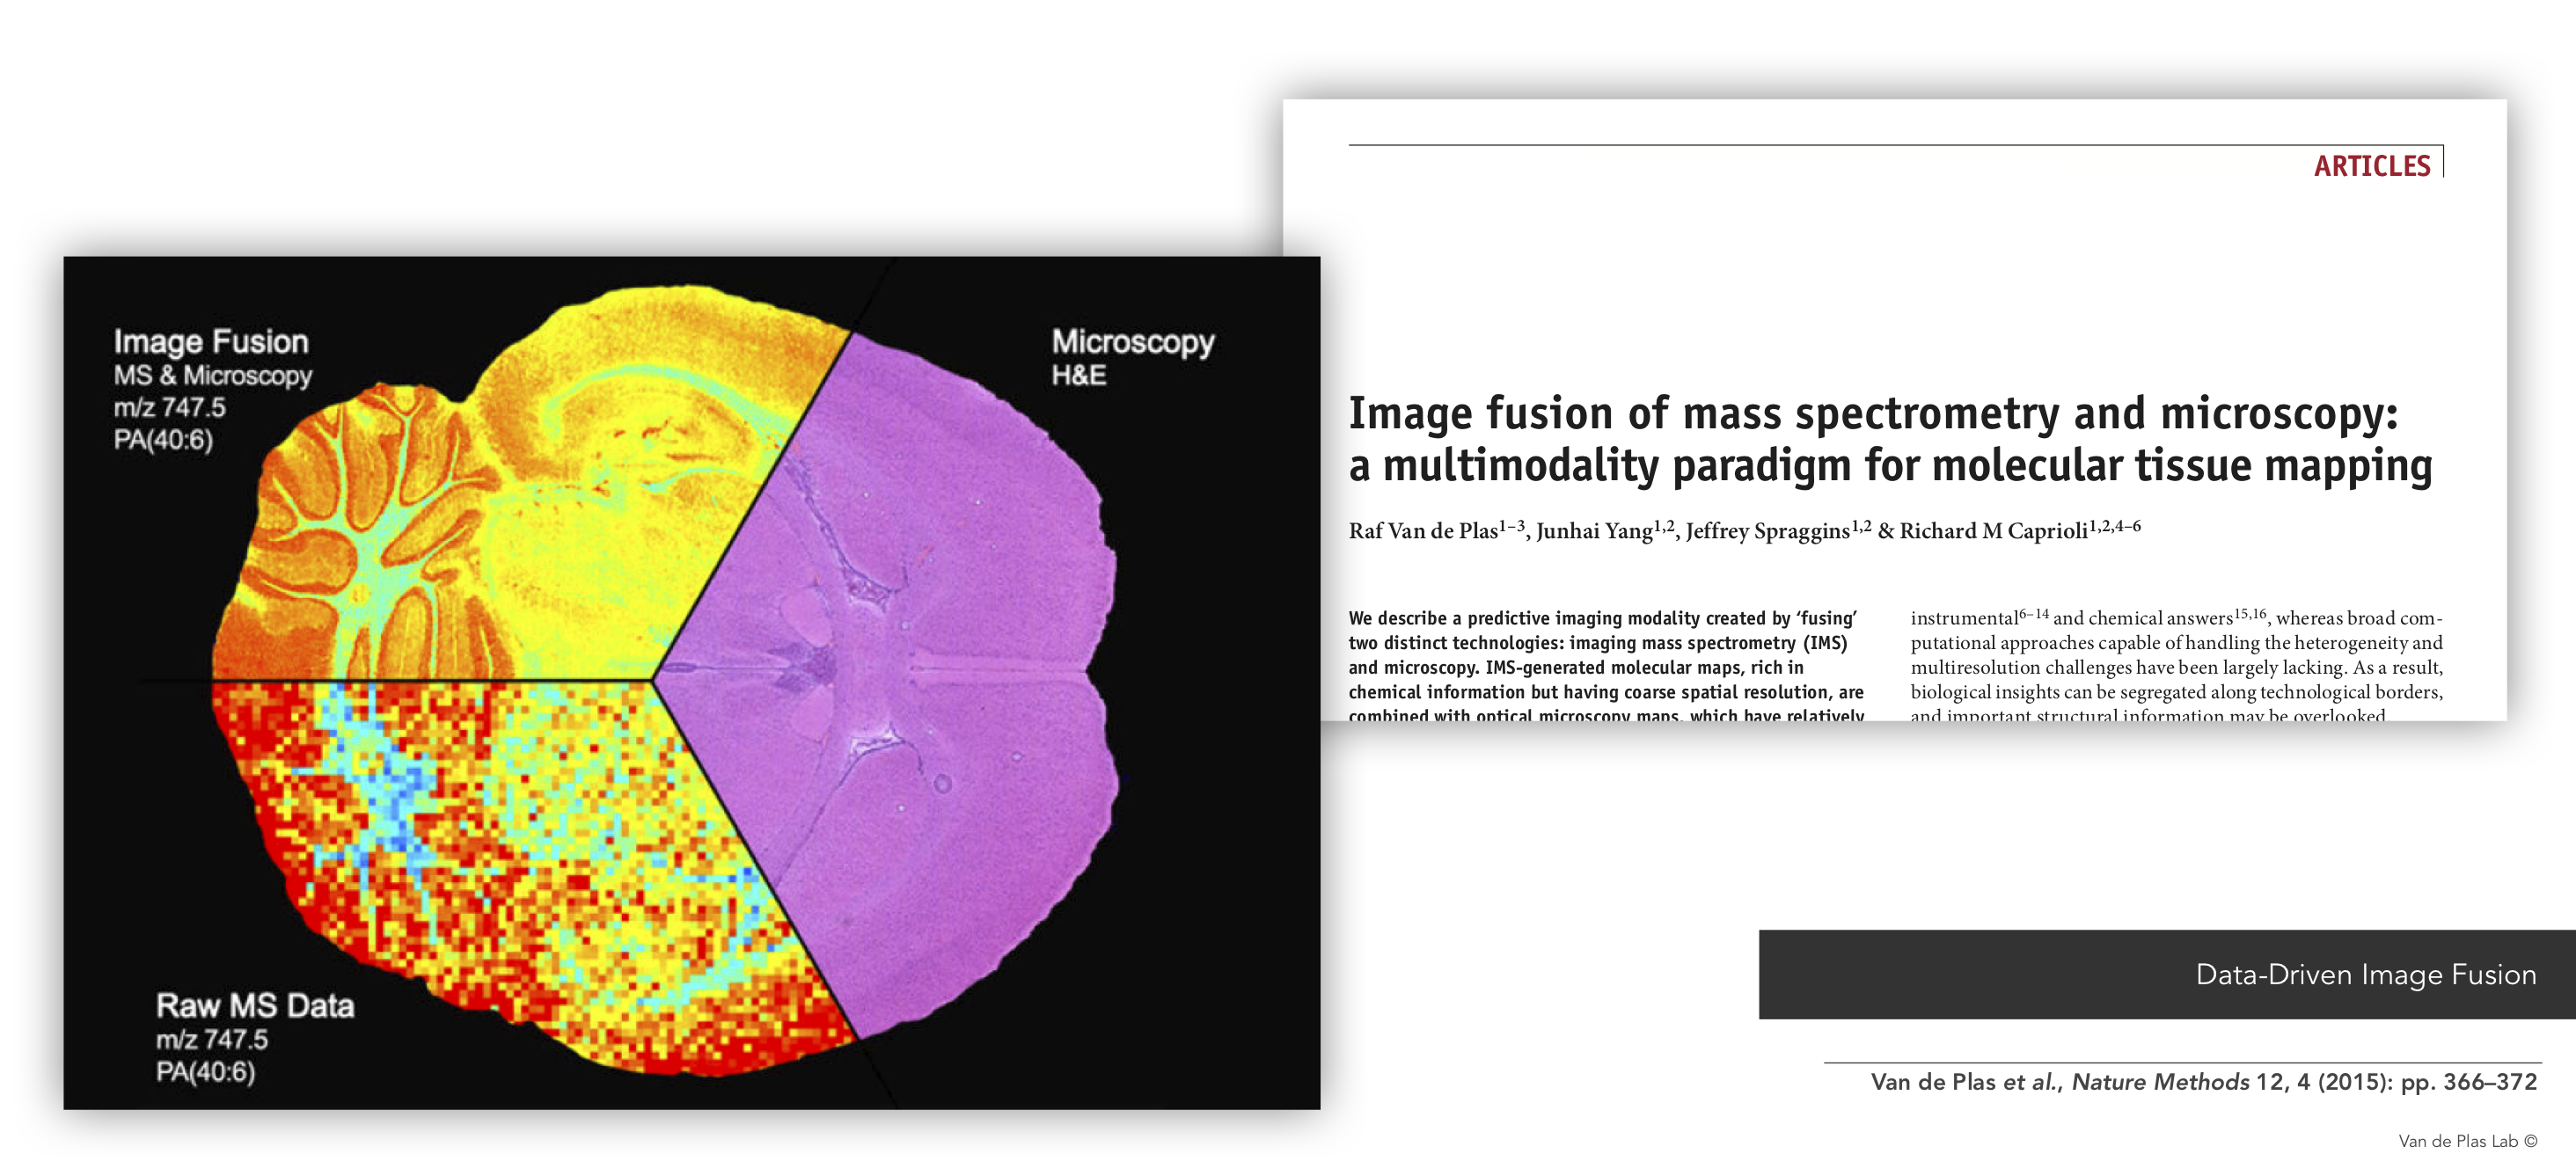 Example of Data-Driven Image Fusion: Van de Plas et al., Nature Methods 12, 4 (2015): pp. 366–372.